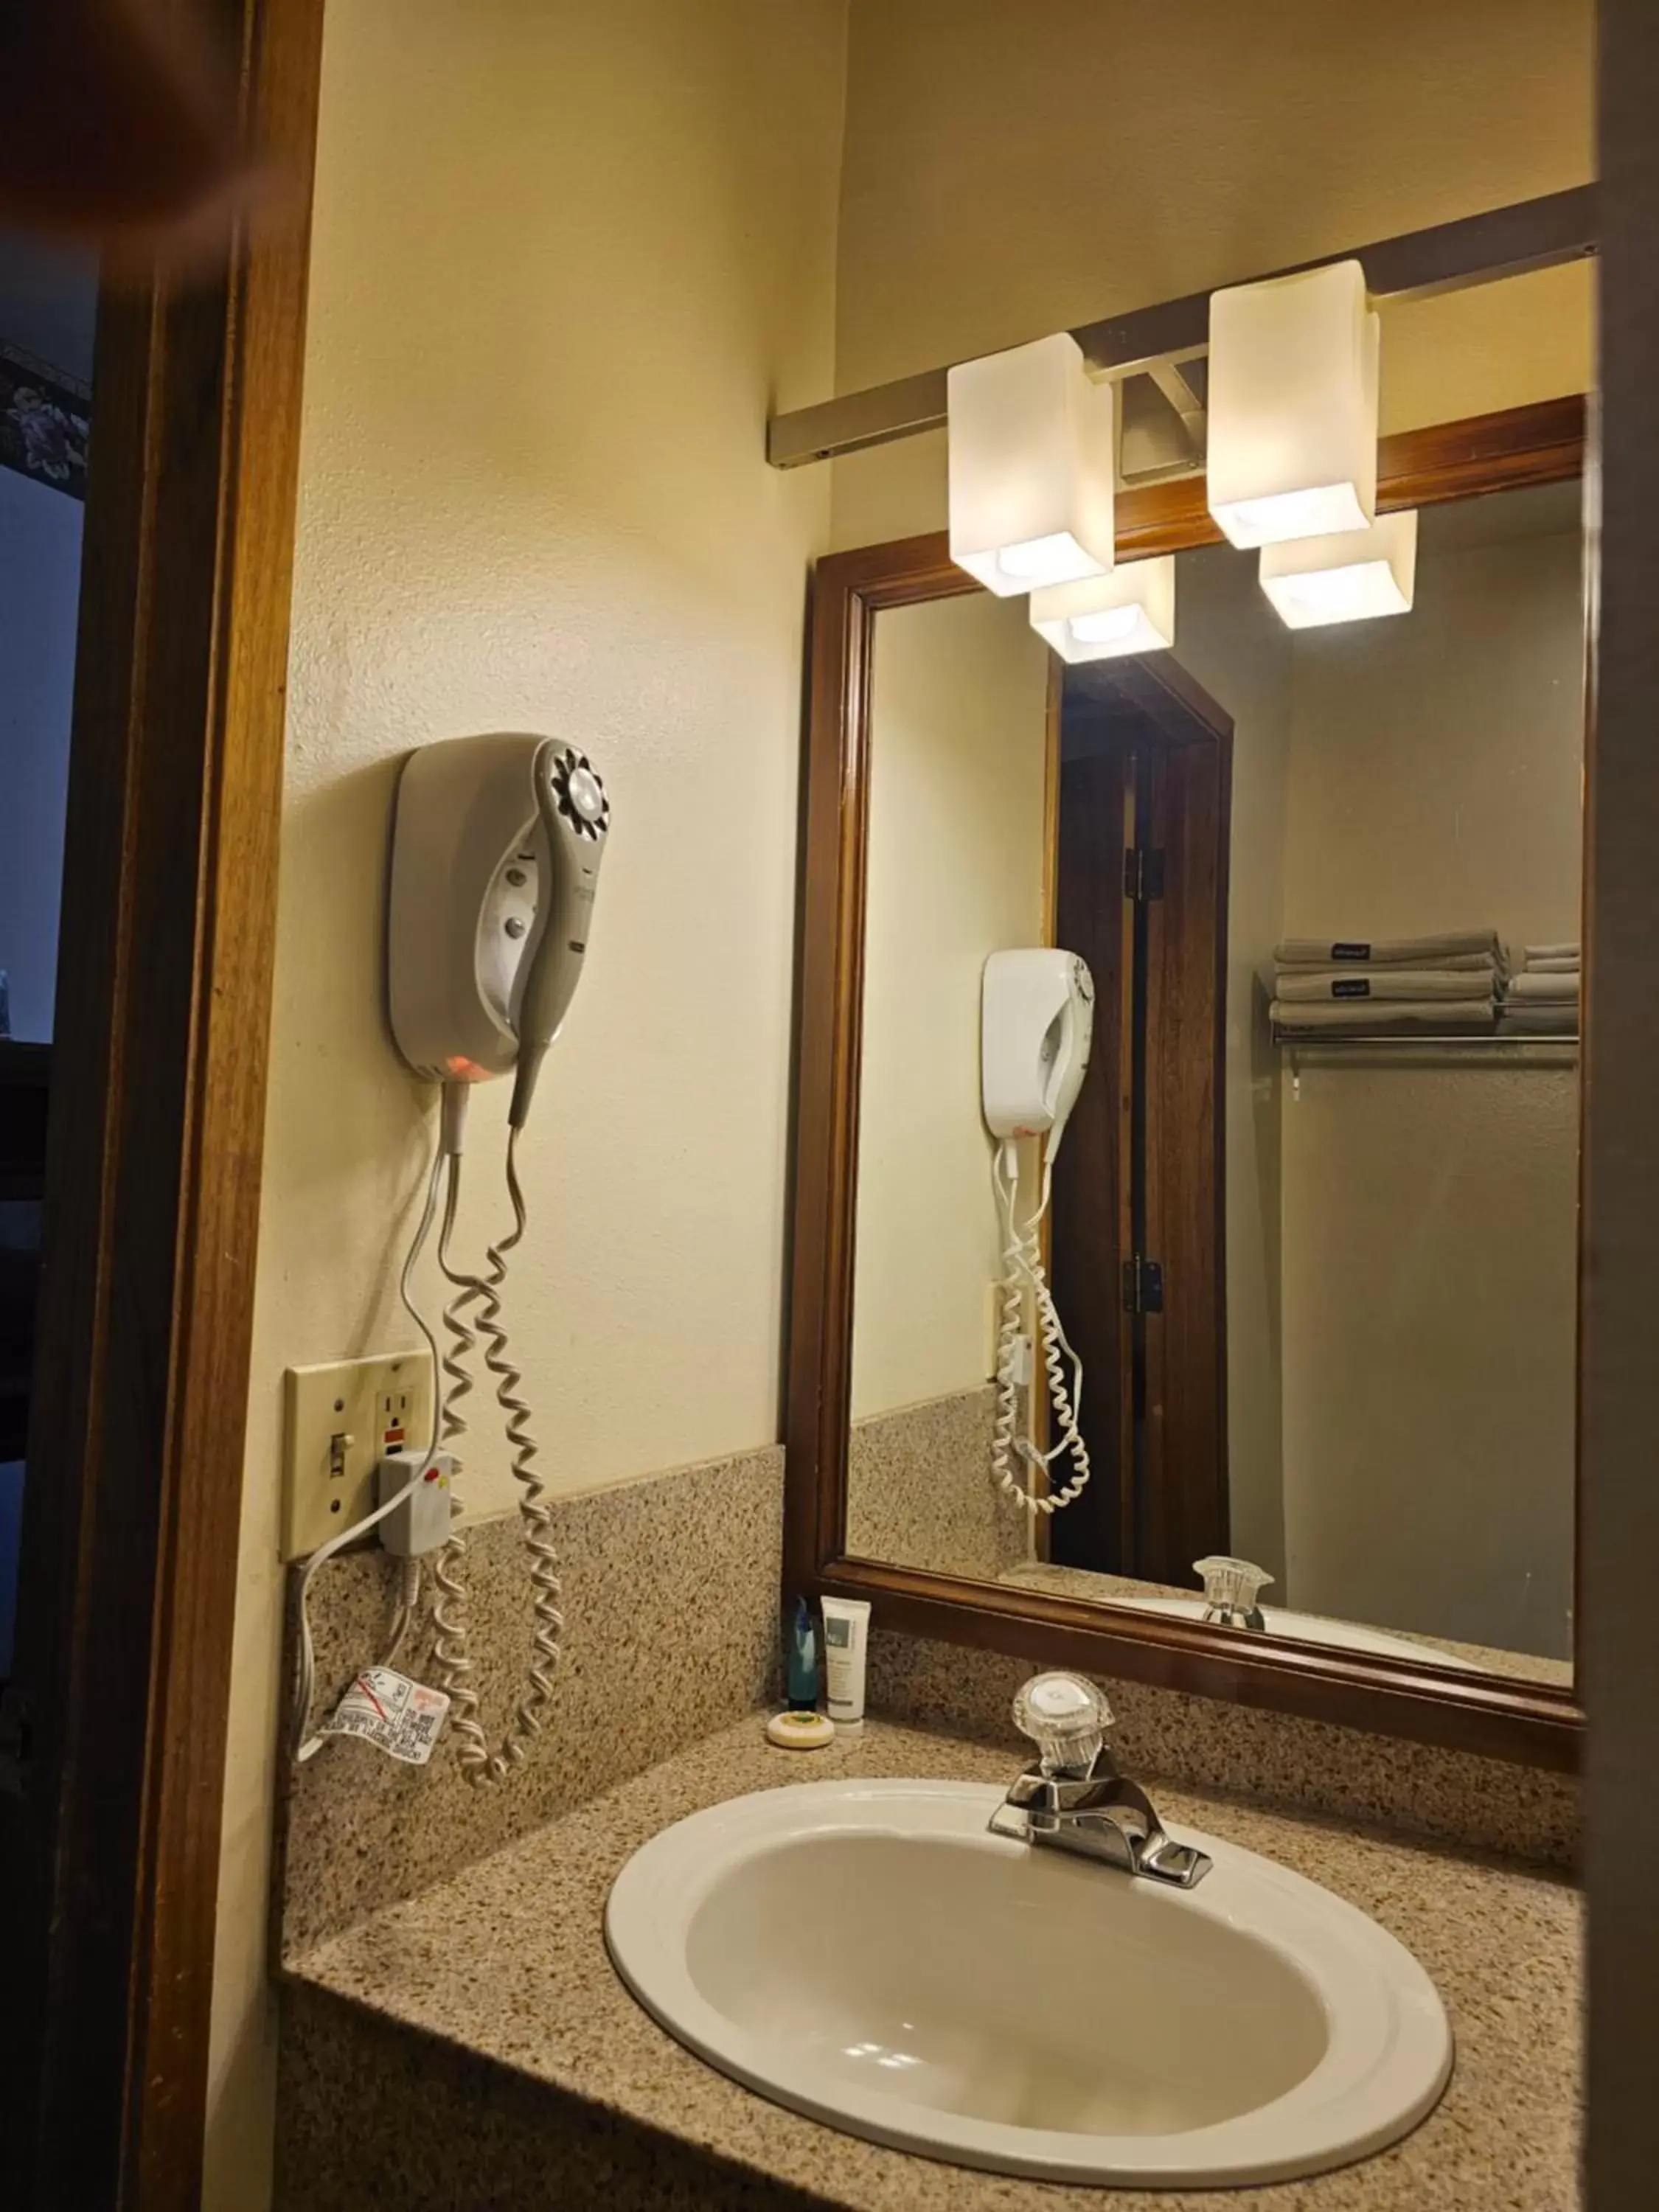 Shower, Bathroom in Cle Elum Travelers Inn